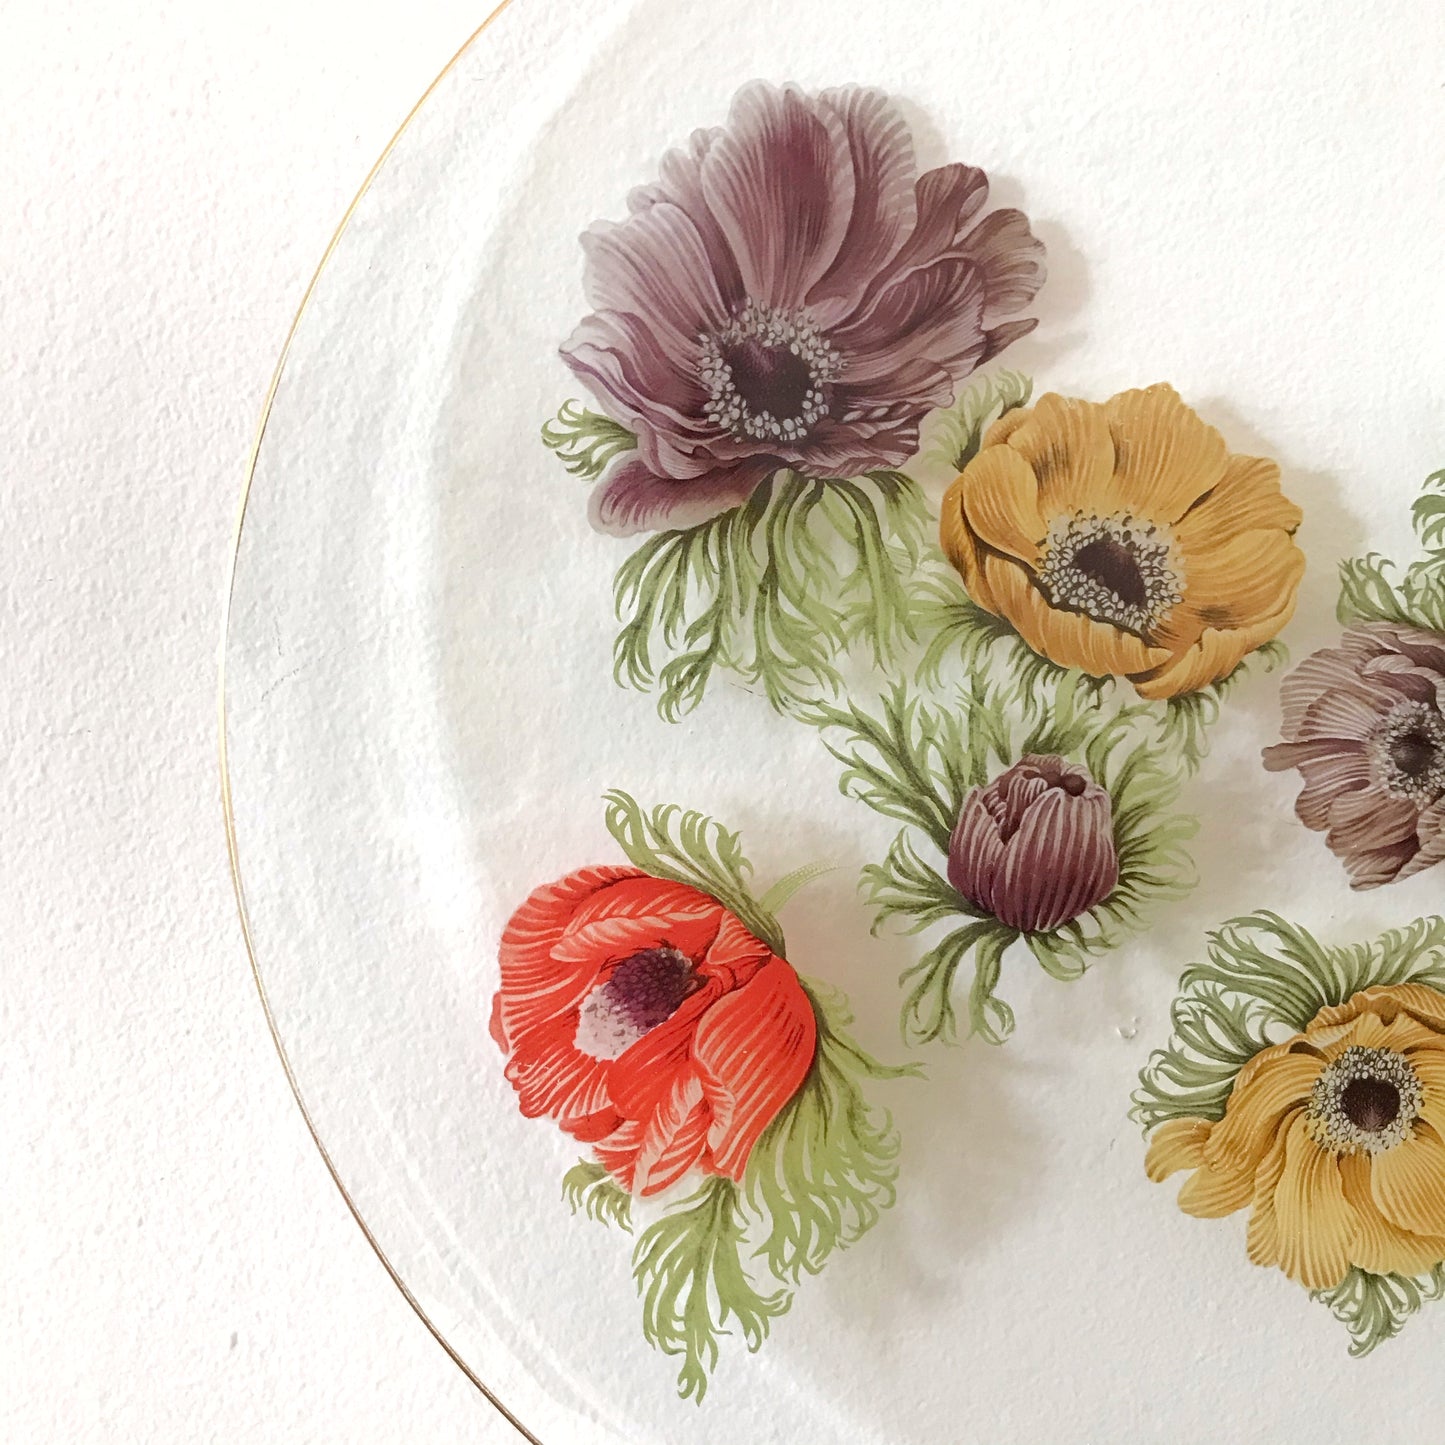 Vintage Glass Floral Platter, 13.5"